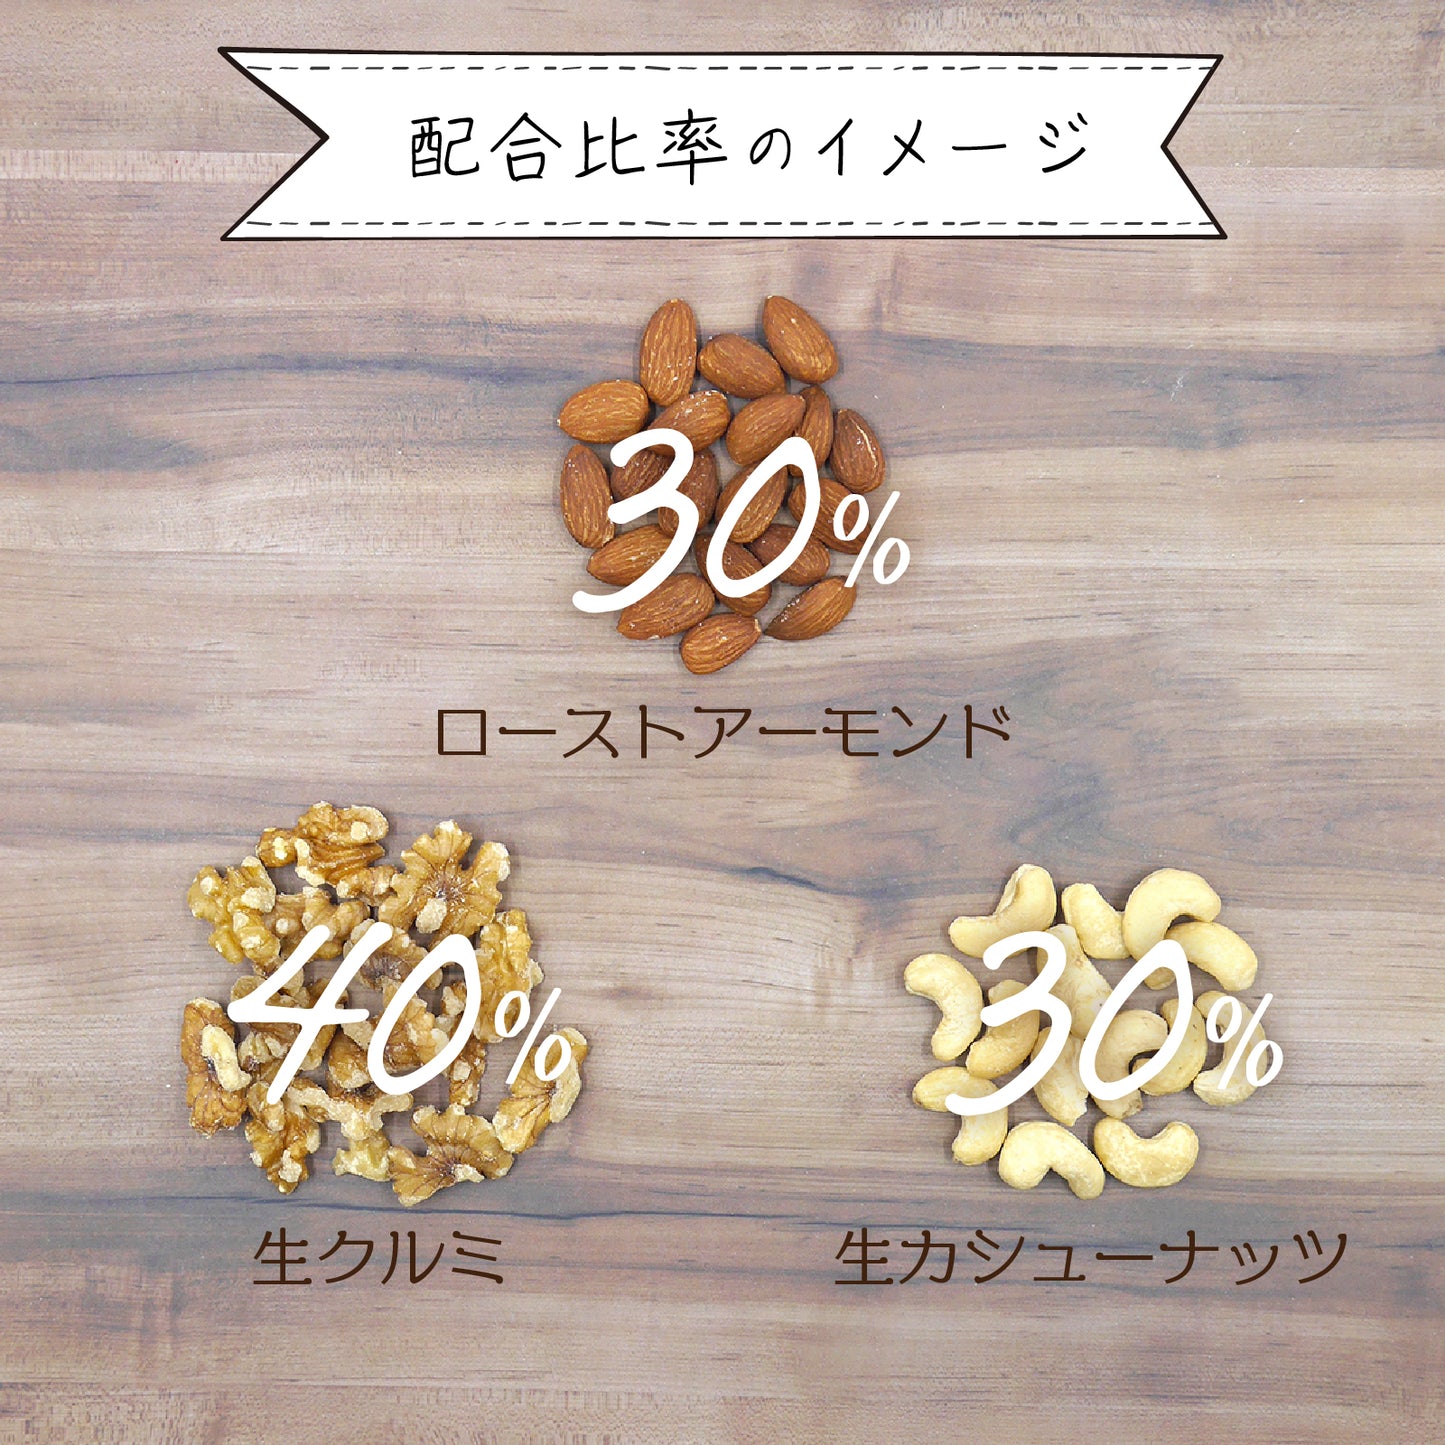 【無添加・無塩・ノンオイル】 3種のミックスナッツ